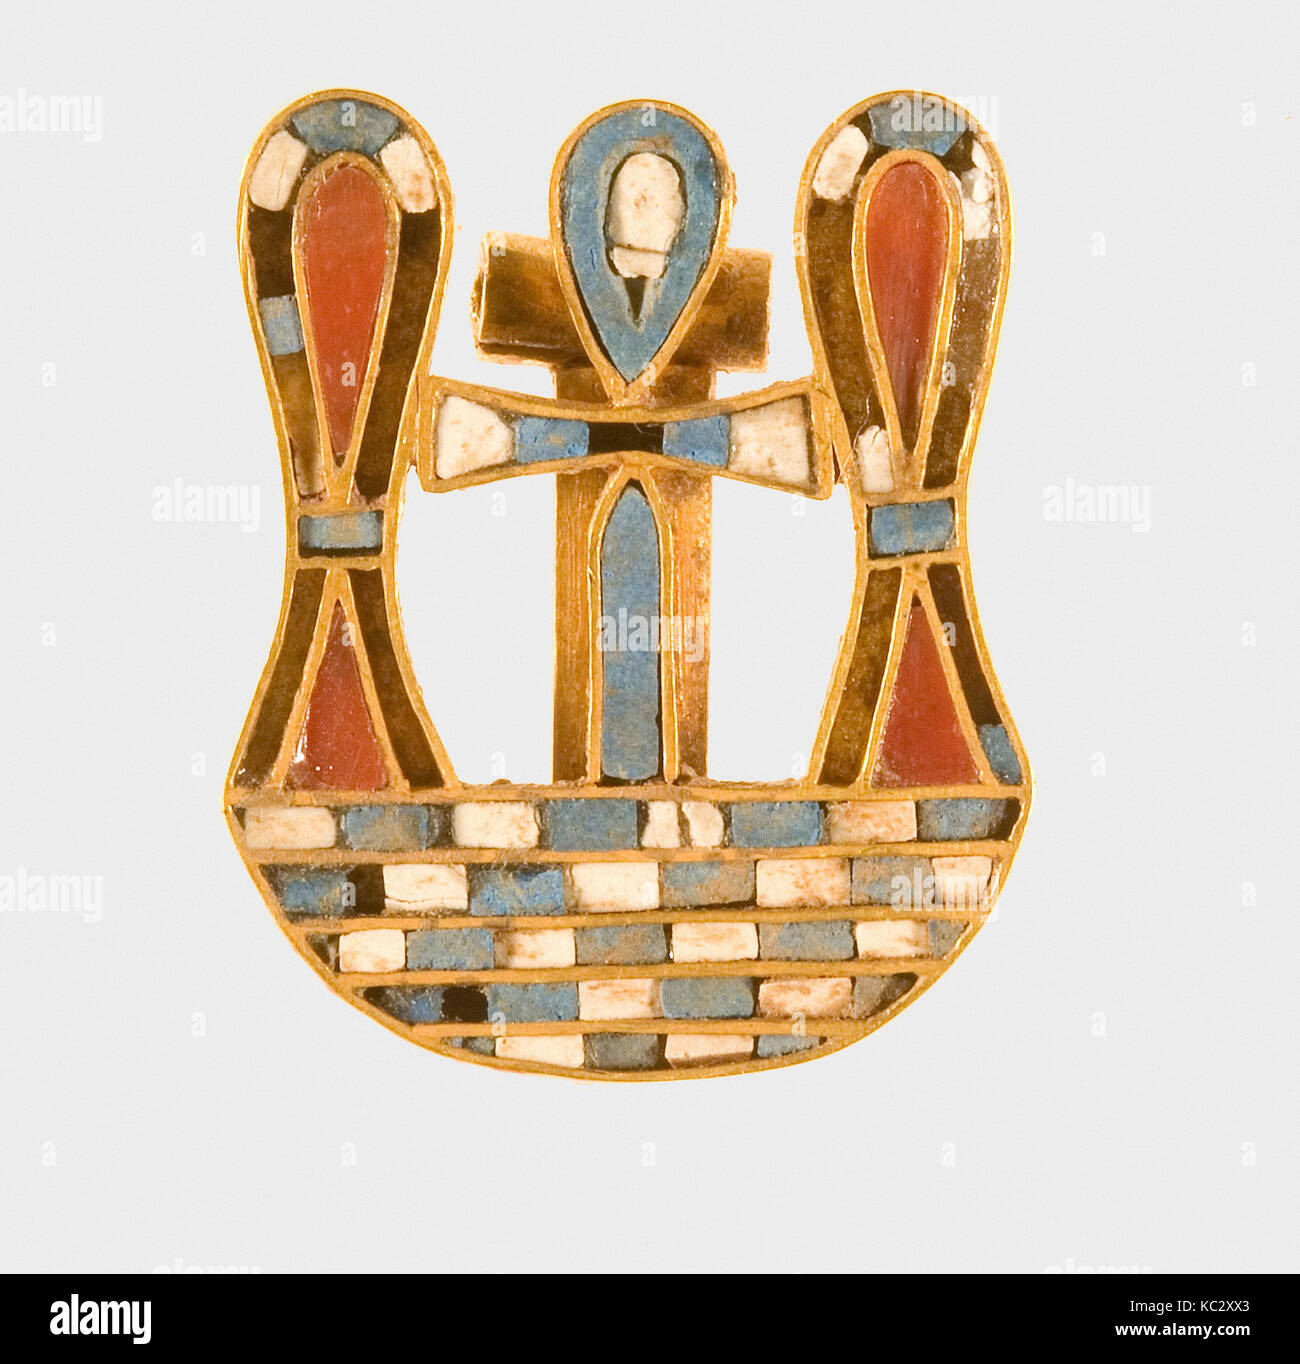 Motto chiusura di Sithathoryunet, Regno di Mezzo, Dynasty 12, ca. 1887-1813 A.C., dall'Egitto, Fayum zona di ingresso, Lahun, la tomba di Foto Stock